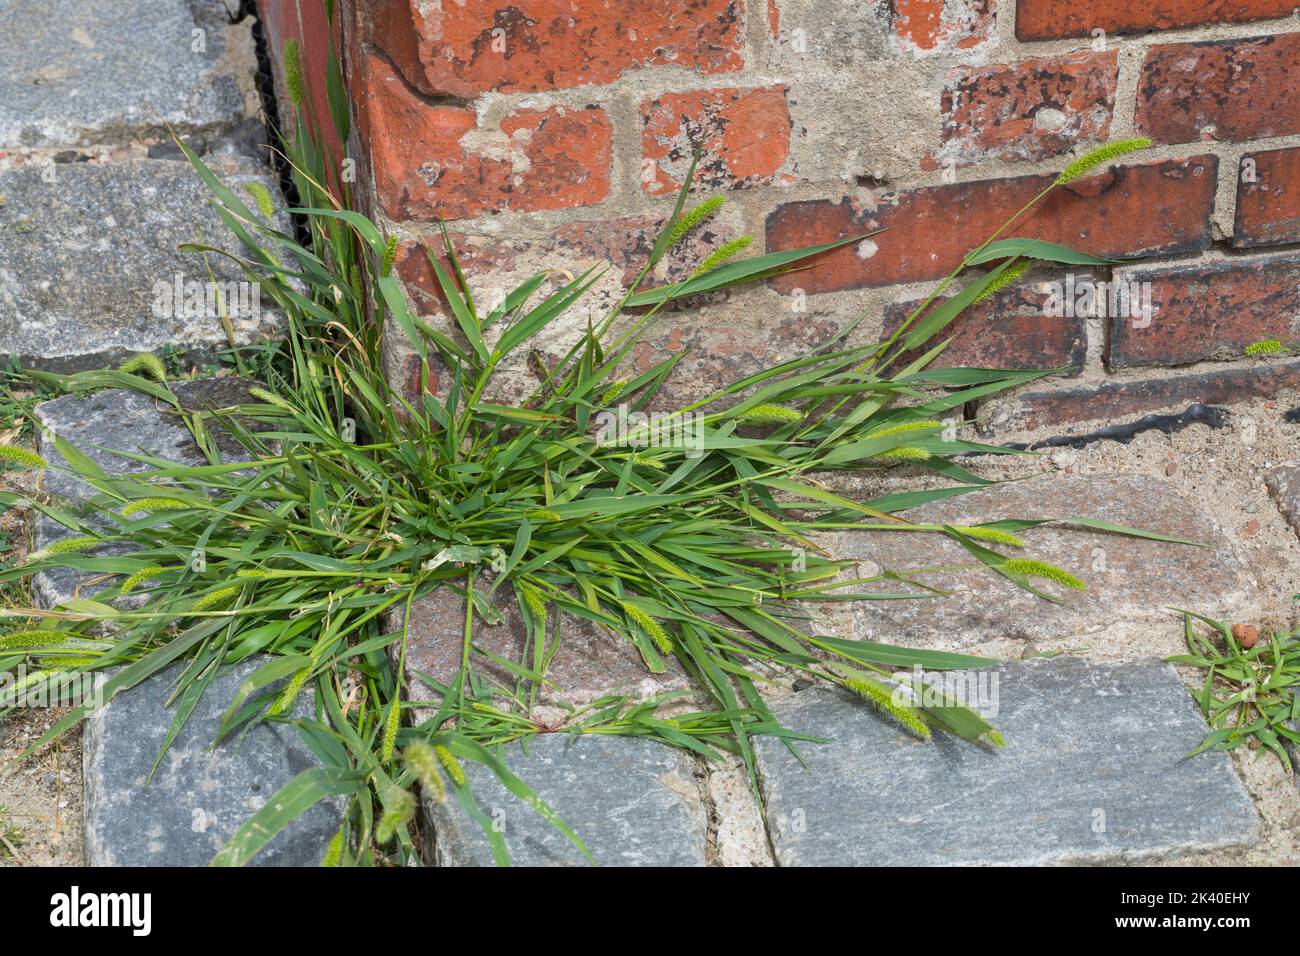 Herbe de bouteille, herbe de soie verte, queue de bœuf verte (Setaria viridis), poussant sur un trottoir, Allemagne Banque D'Images